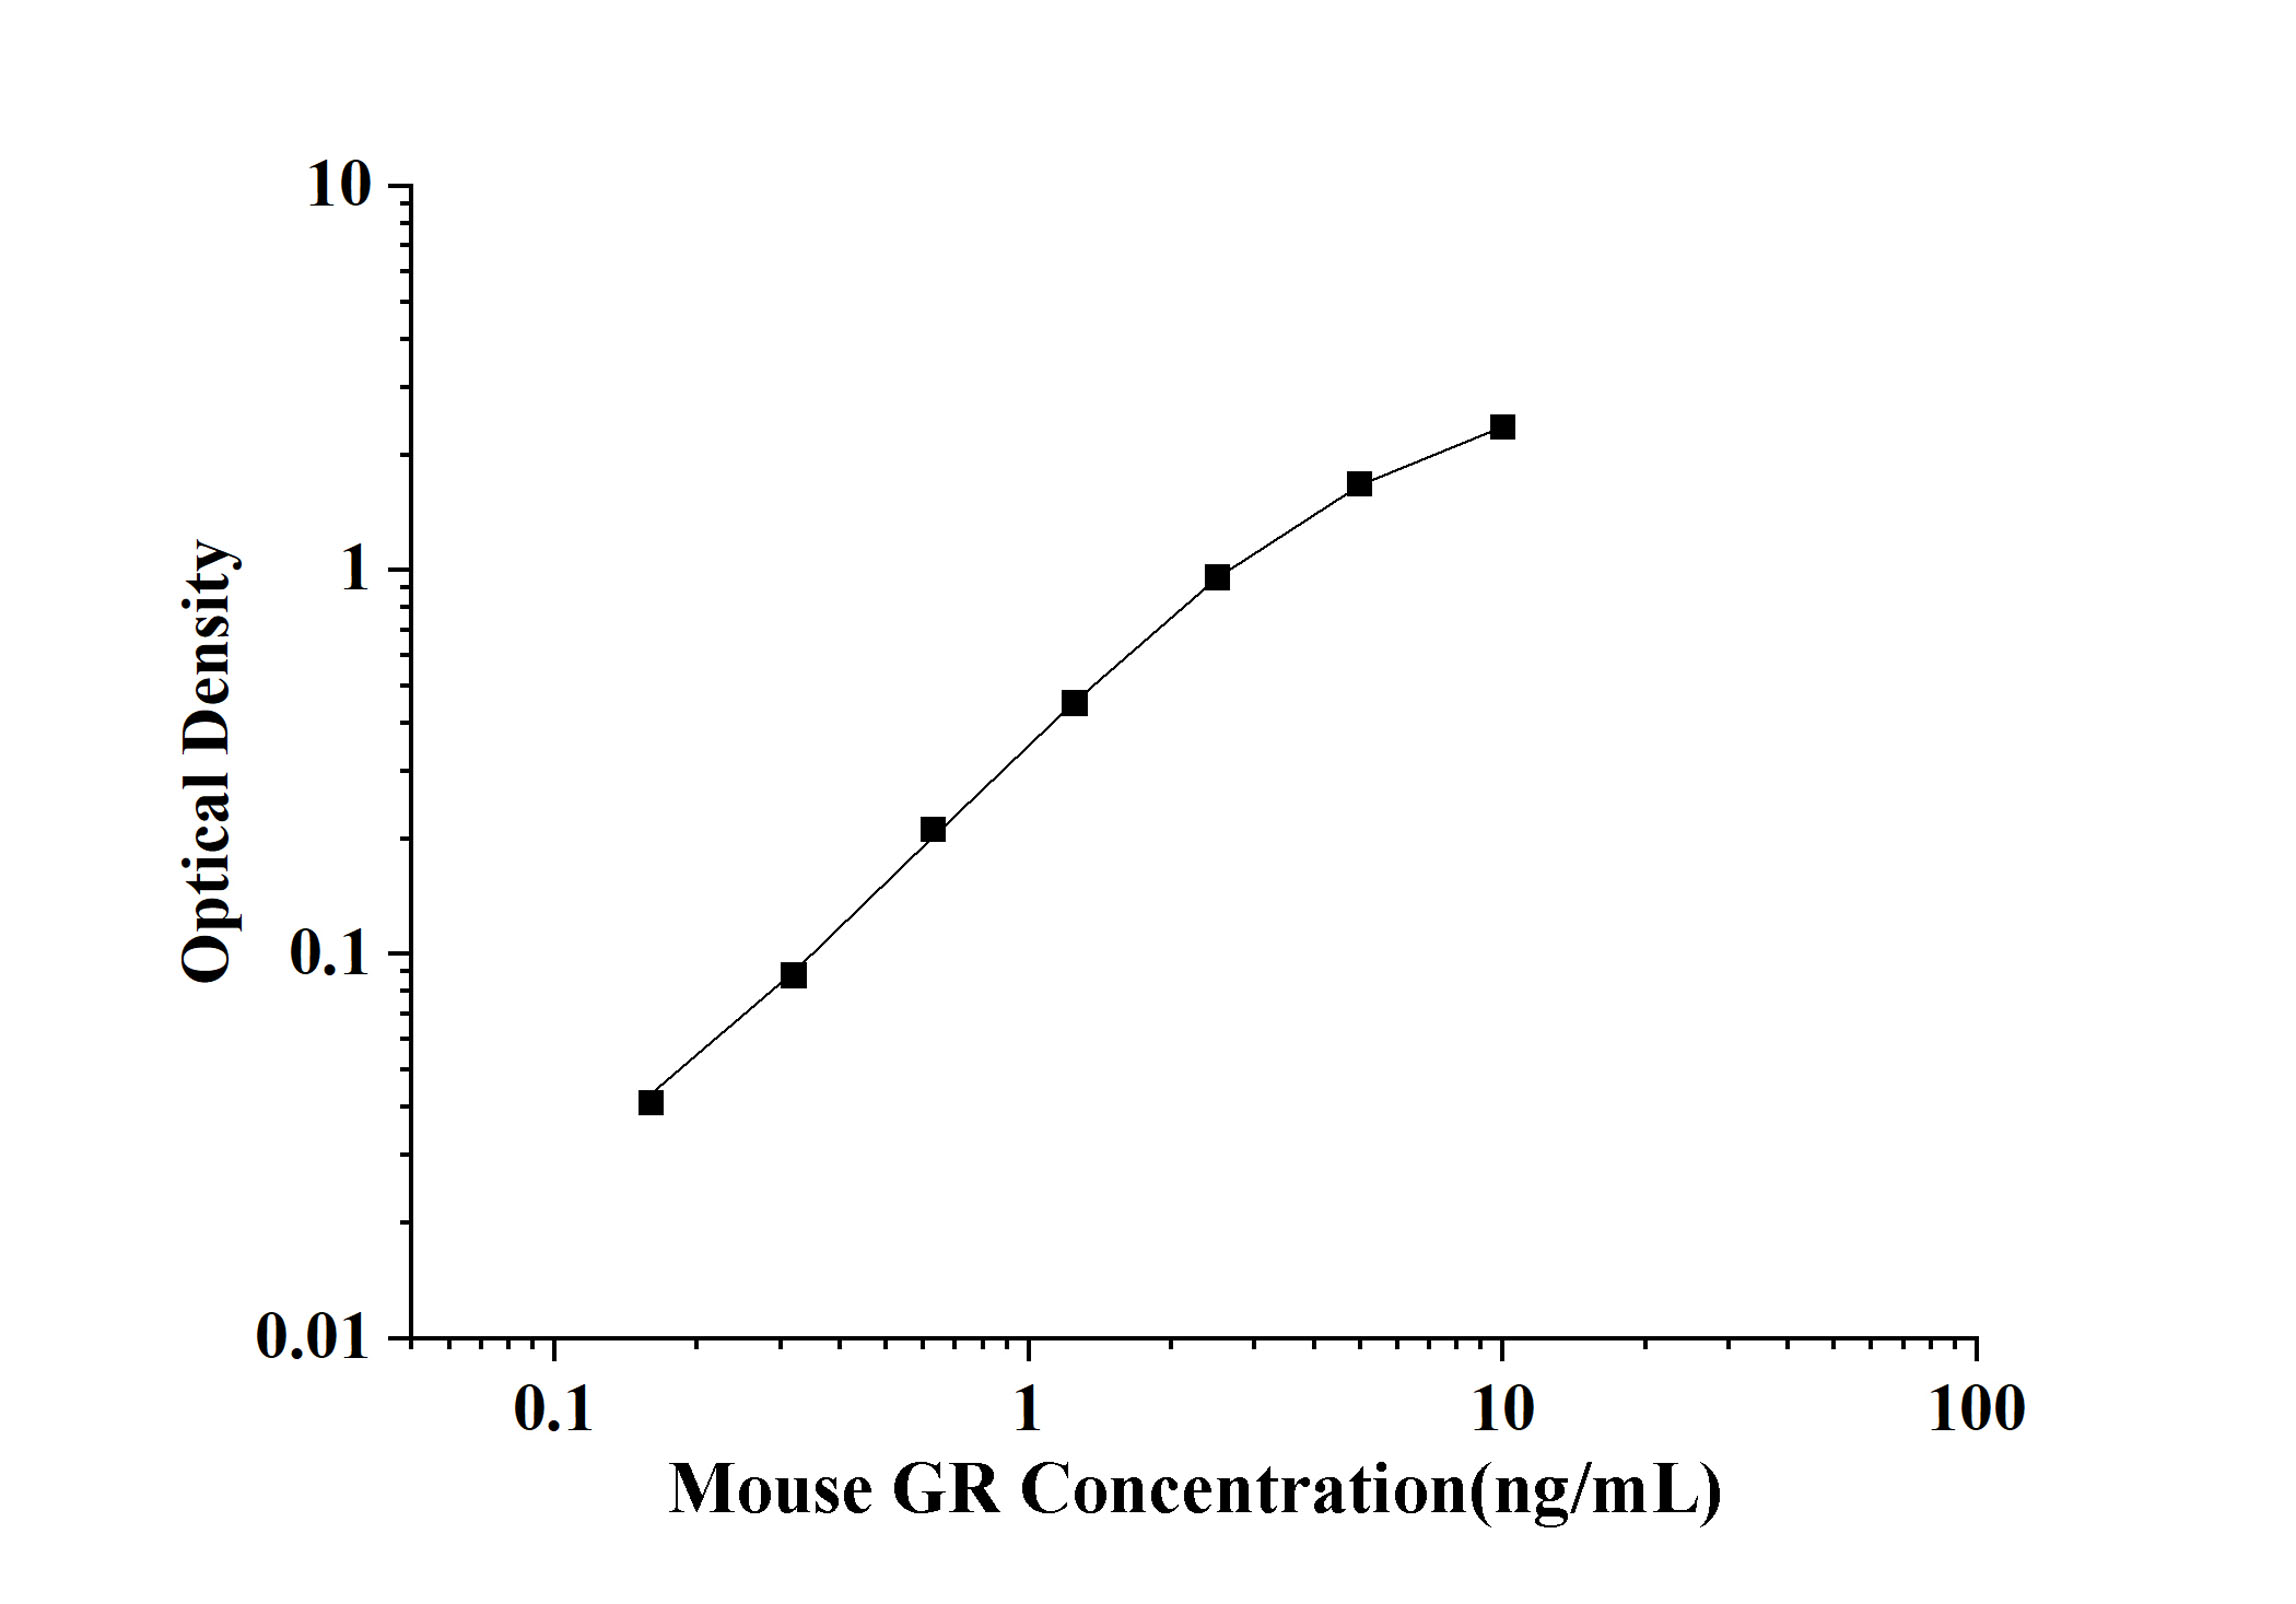 Mouse GR(glucocorticoid receptor) ELISA Kit